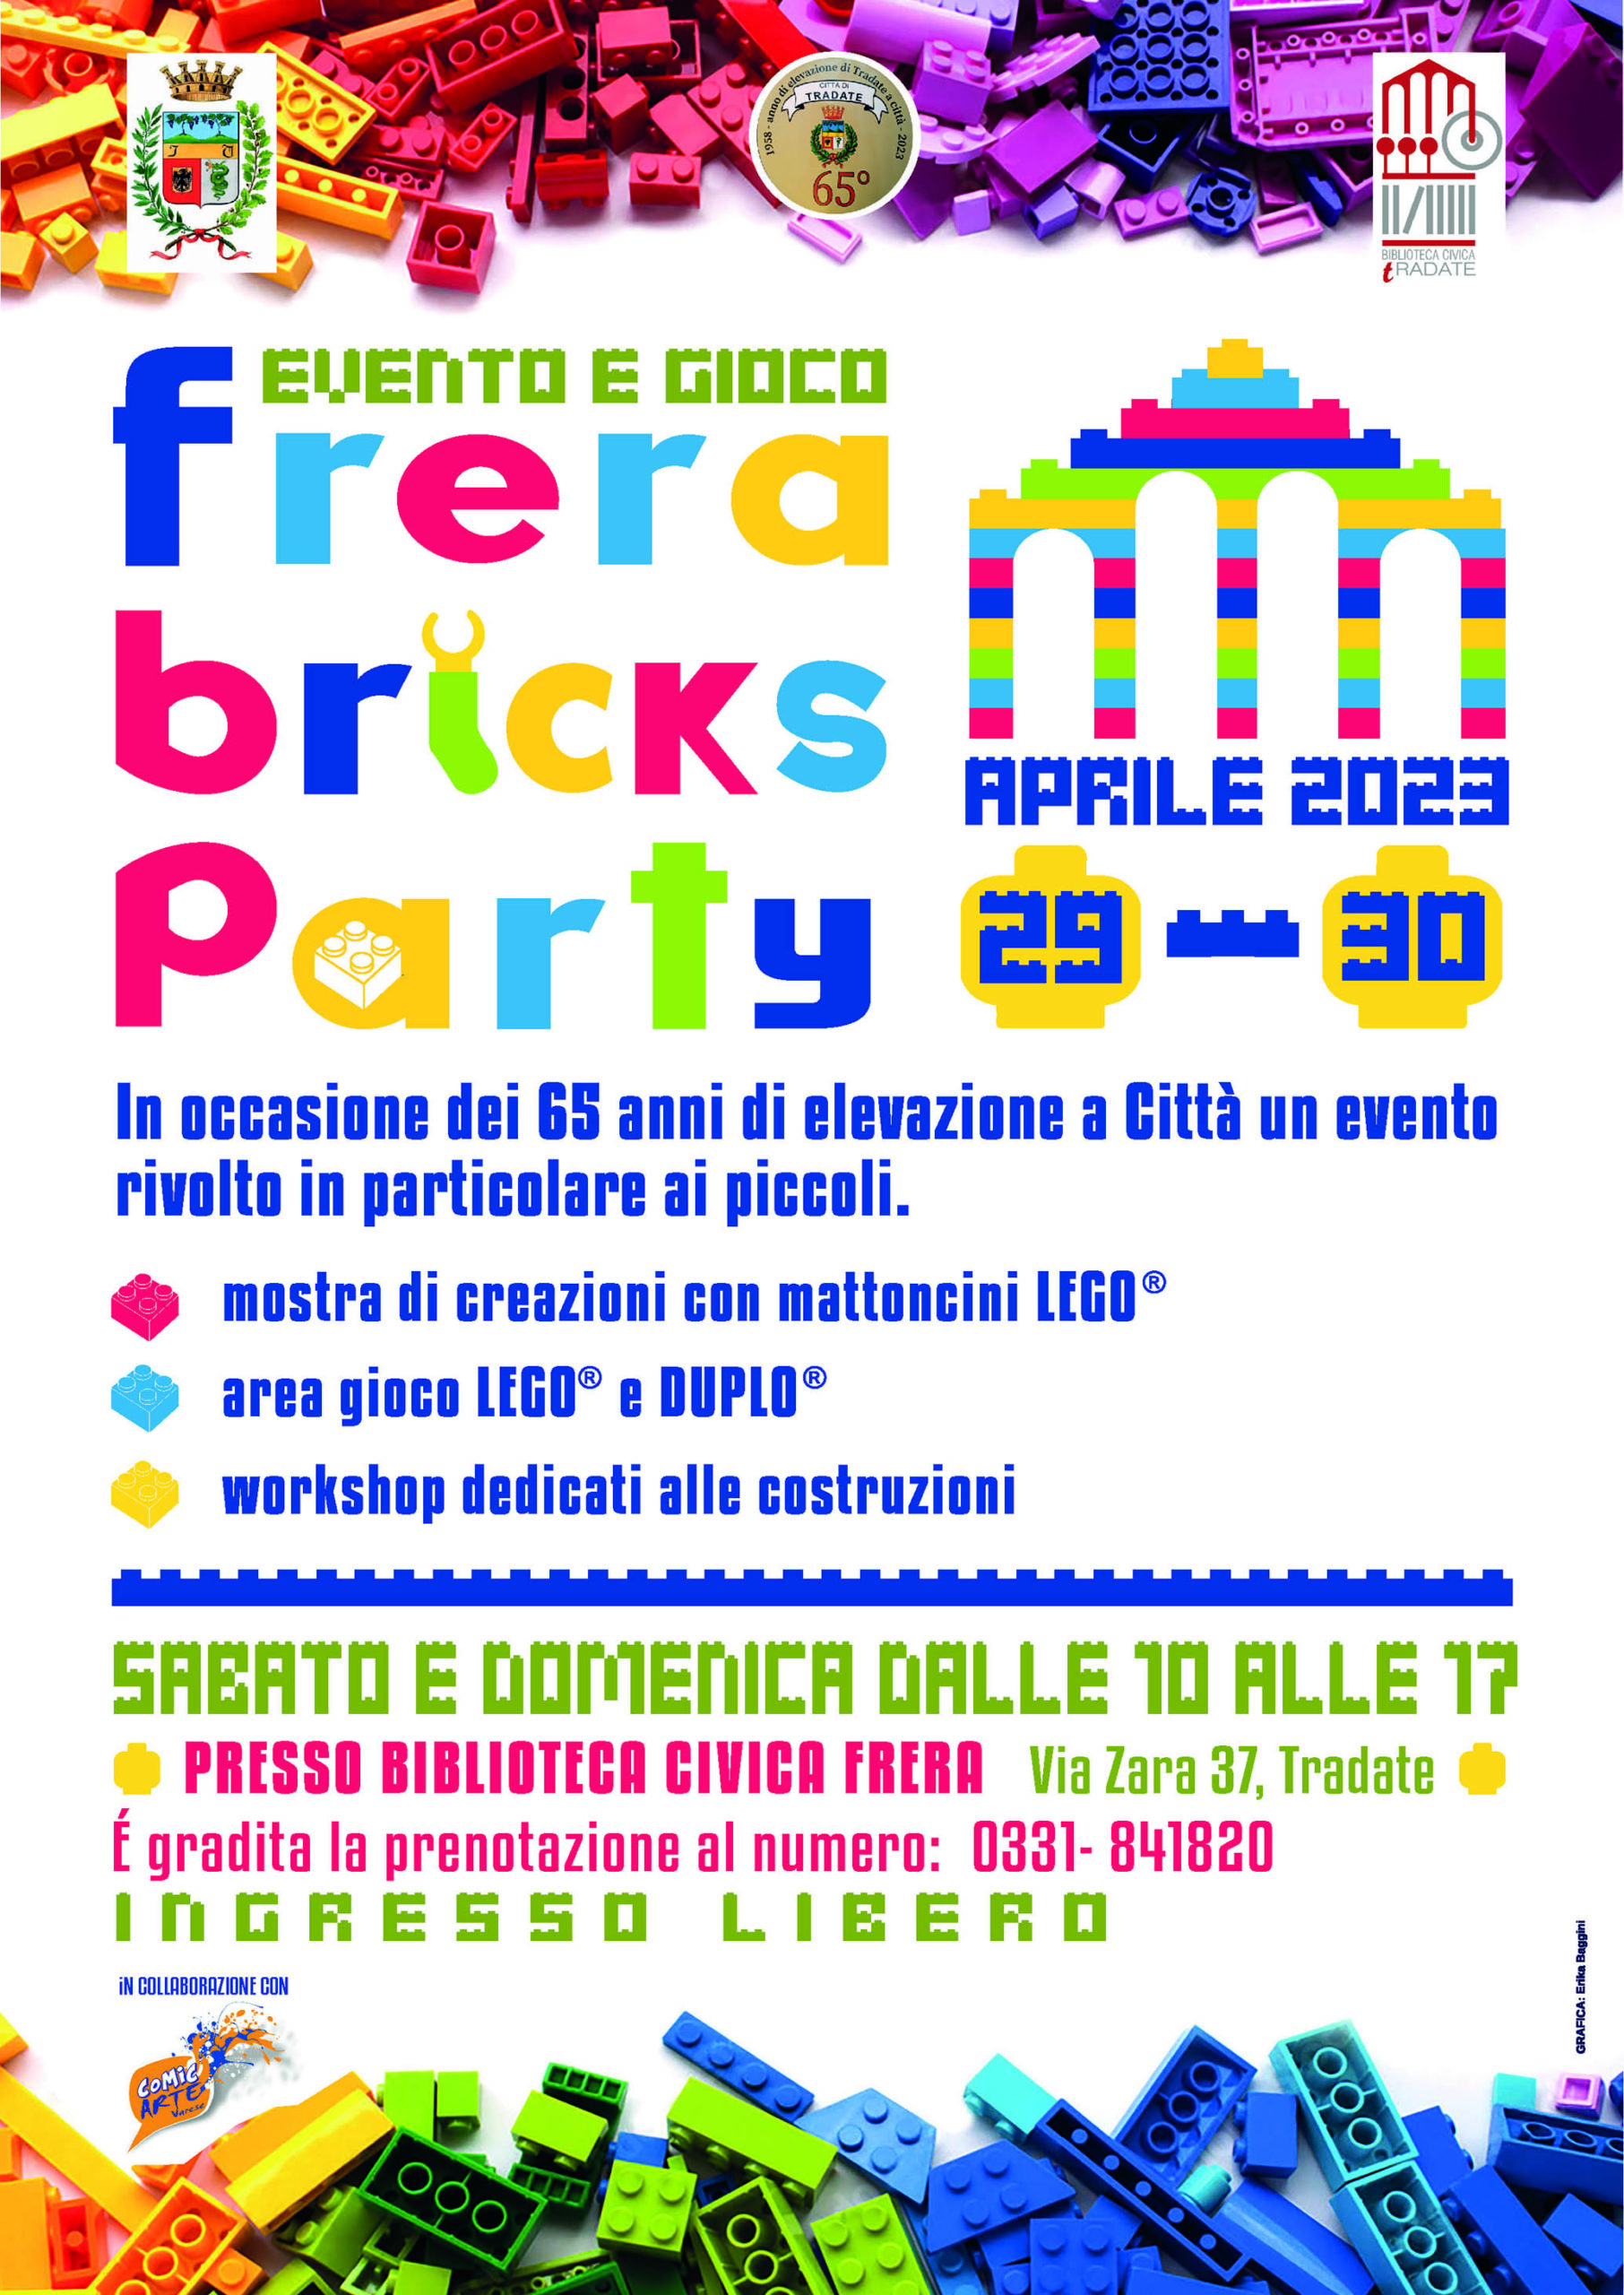 Frera Bricks Party